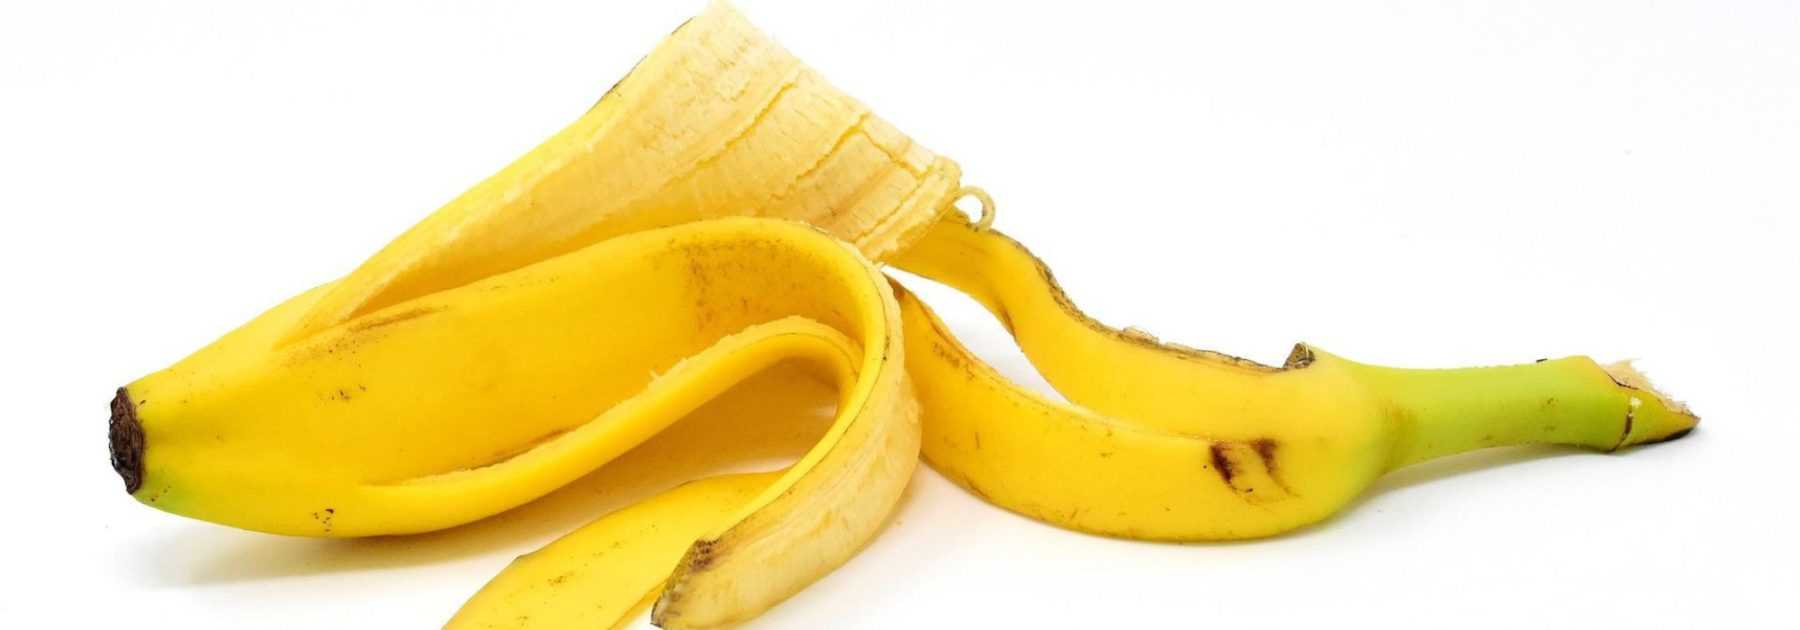 Zéro déchet : la peau de banane au jardin